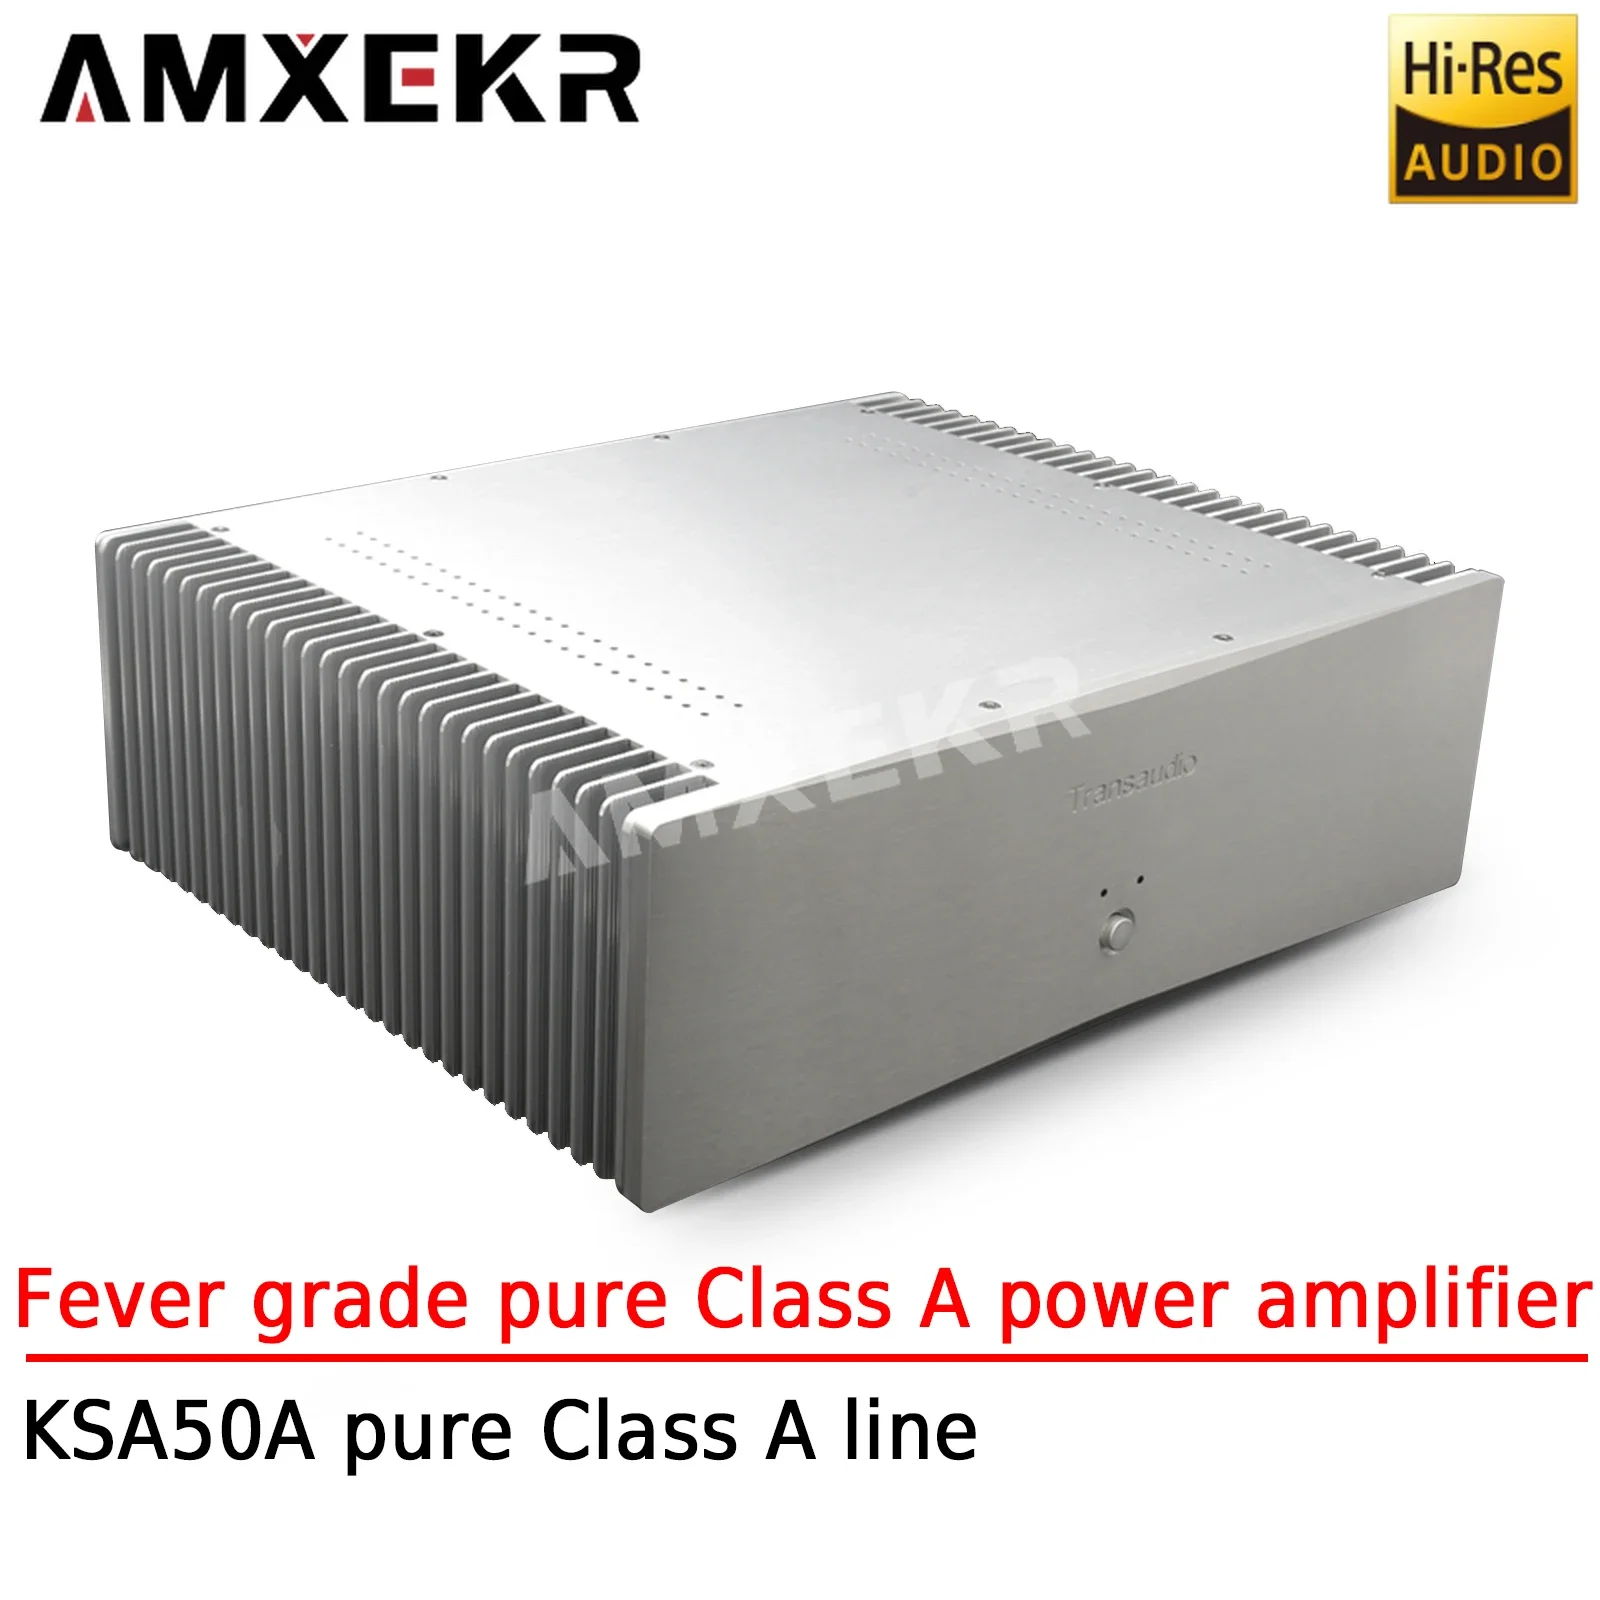 

AMXEKR A50 Fever Grade Pure Class A Power Amplifier Using KSA50A Pure Class A Line Home Theater